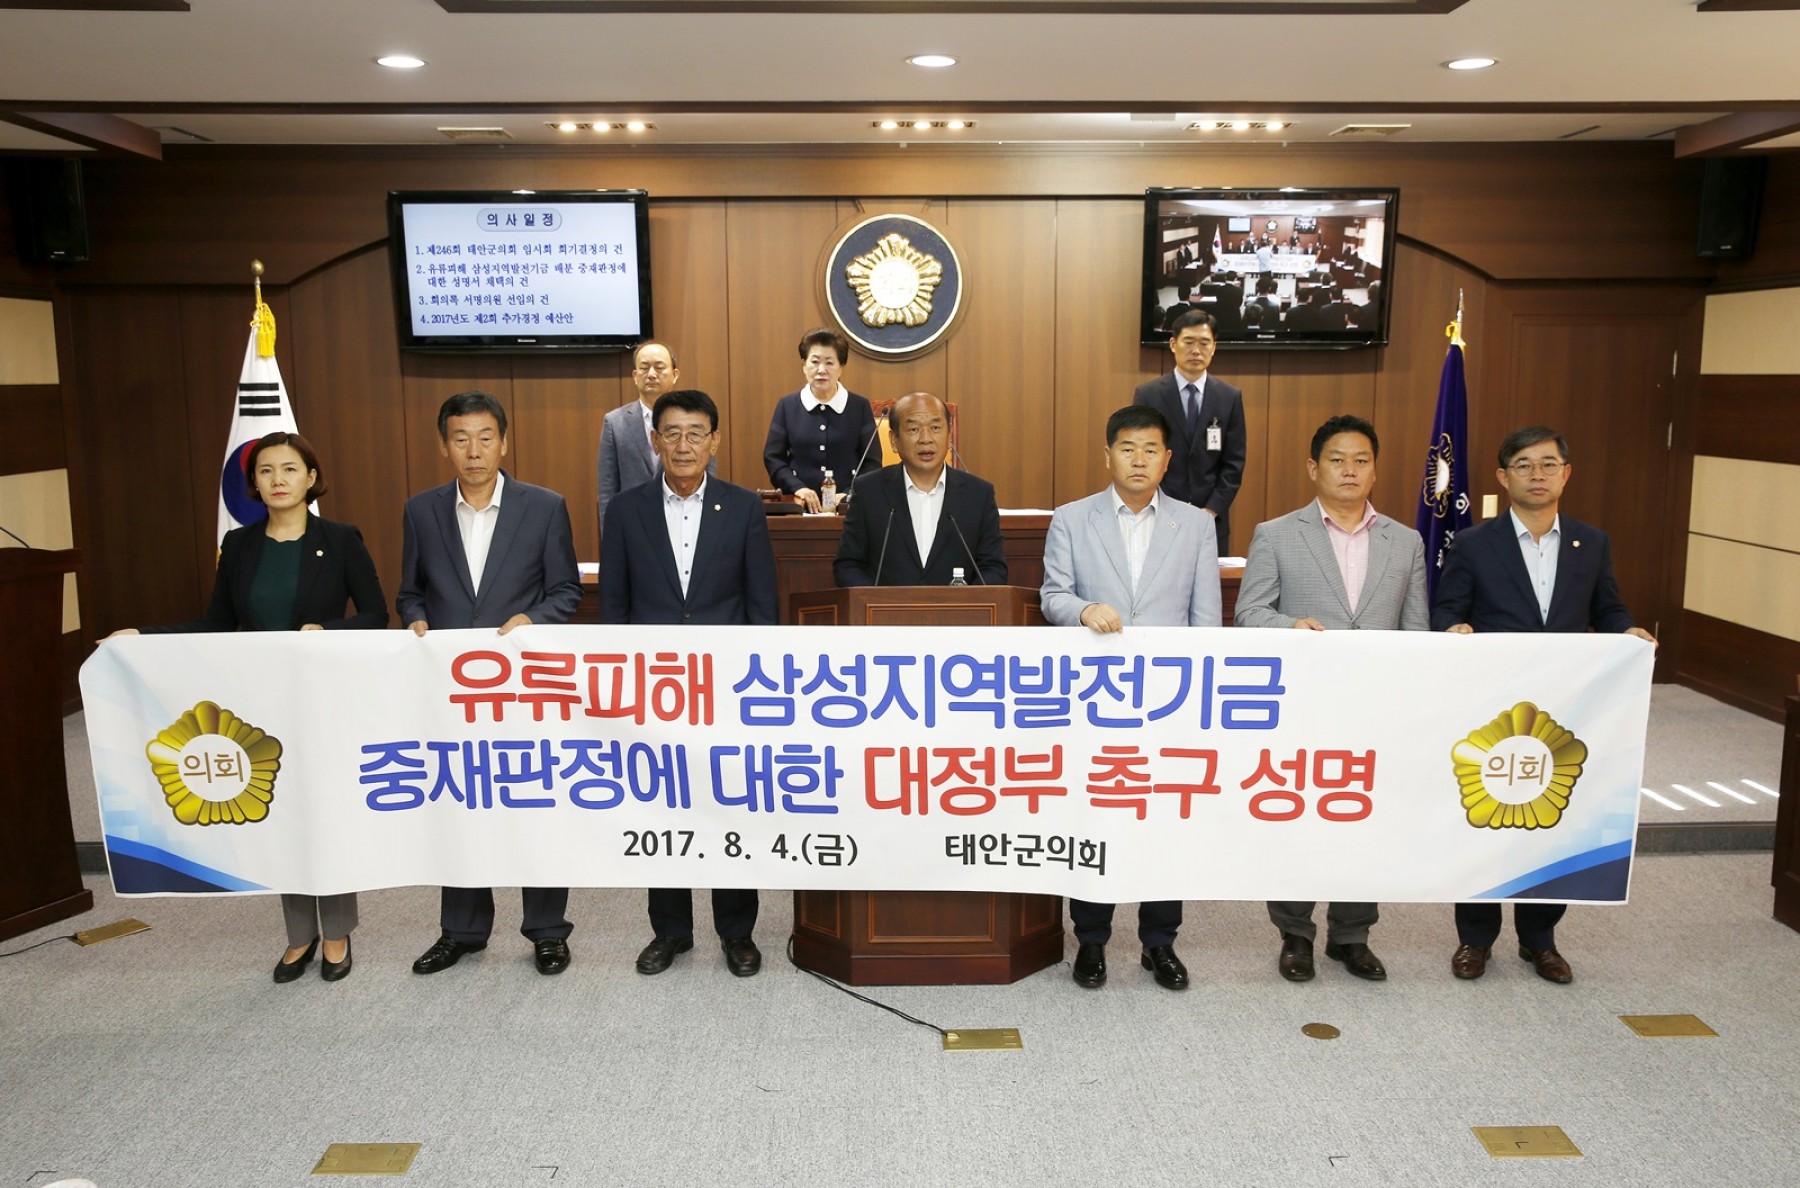 태안군의회, 유류피해 삼성지역발전기금 배분 중재판정에 대한 성명서 채택